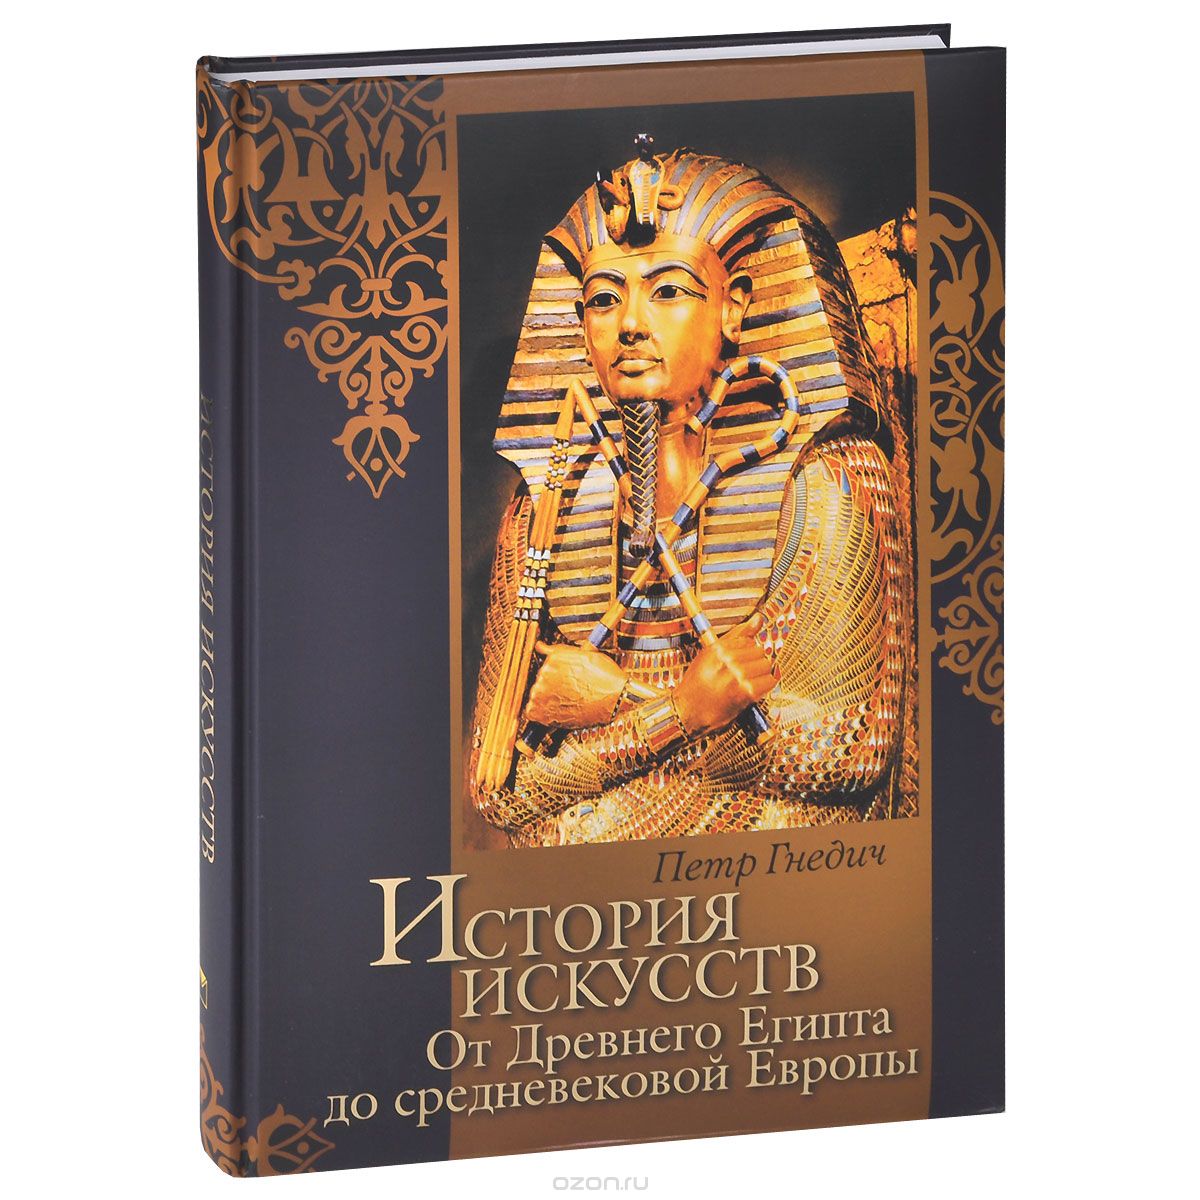 Скачать книгу "История искусств. От Древнего Египта до средневековой Европы, Петр Гнедич"